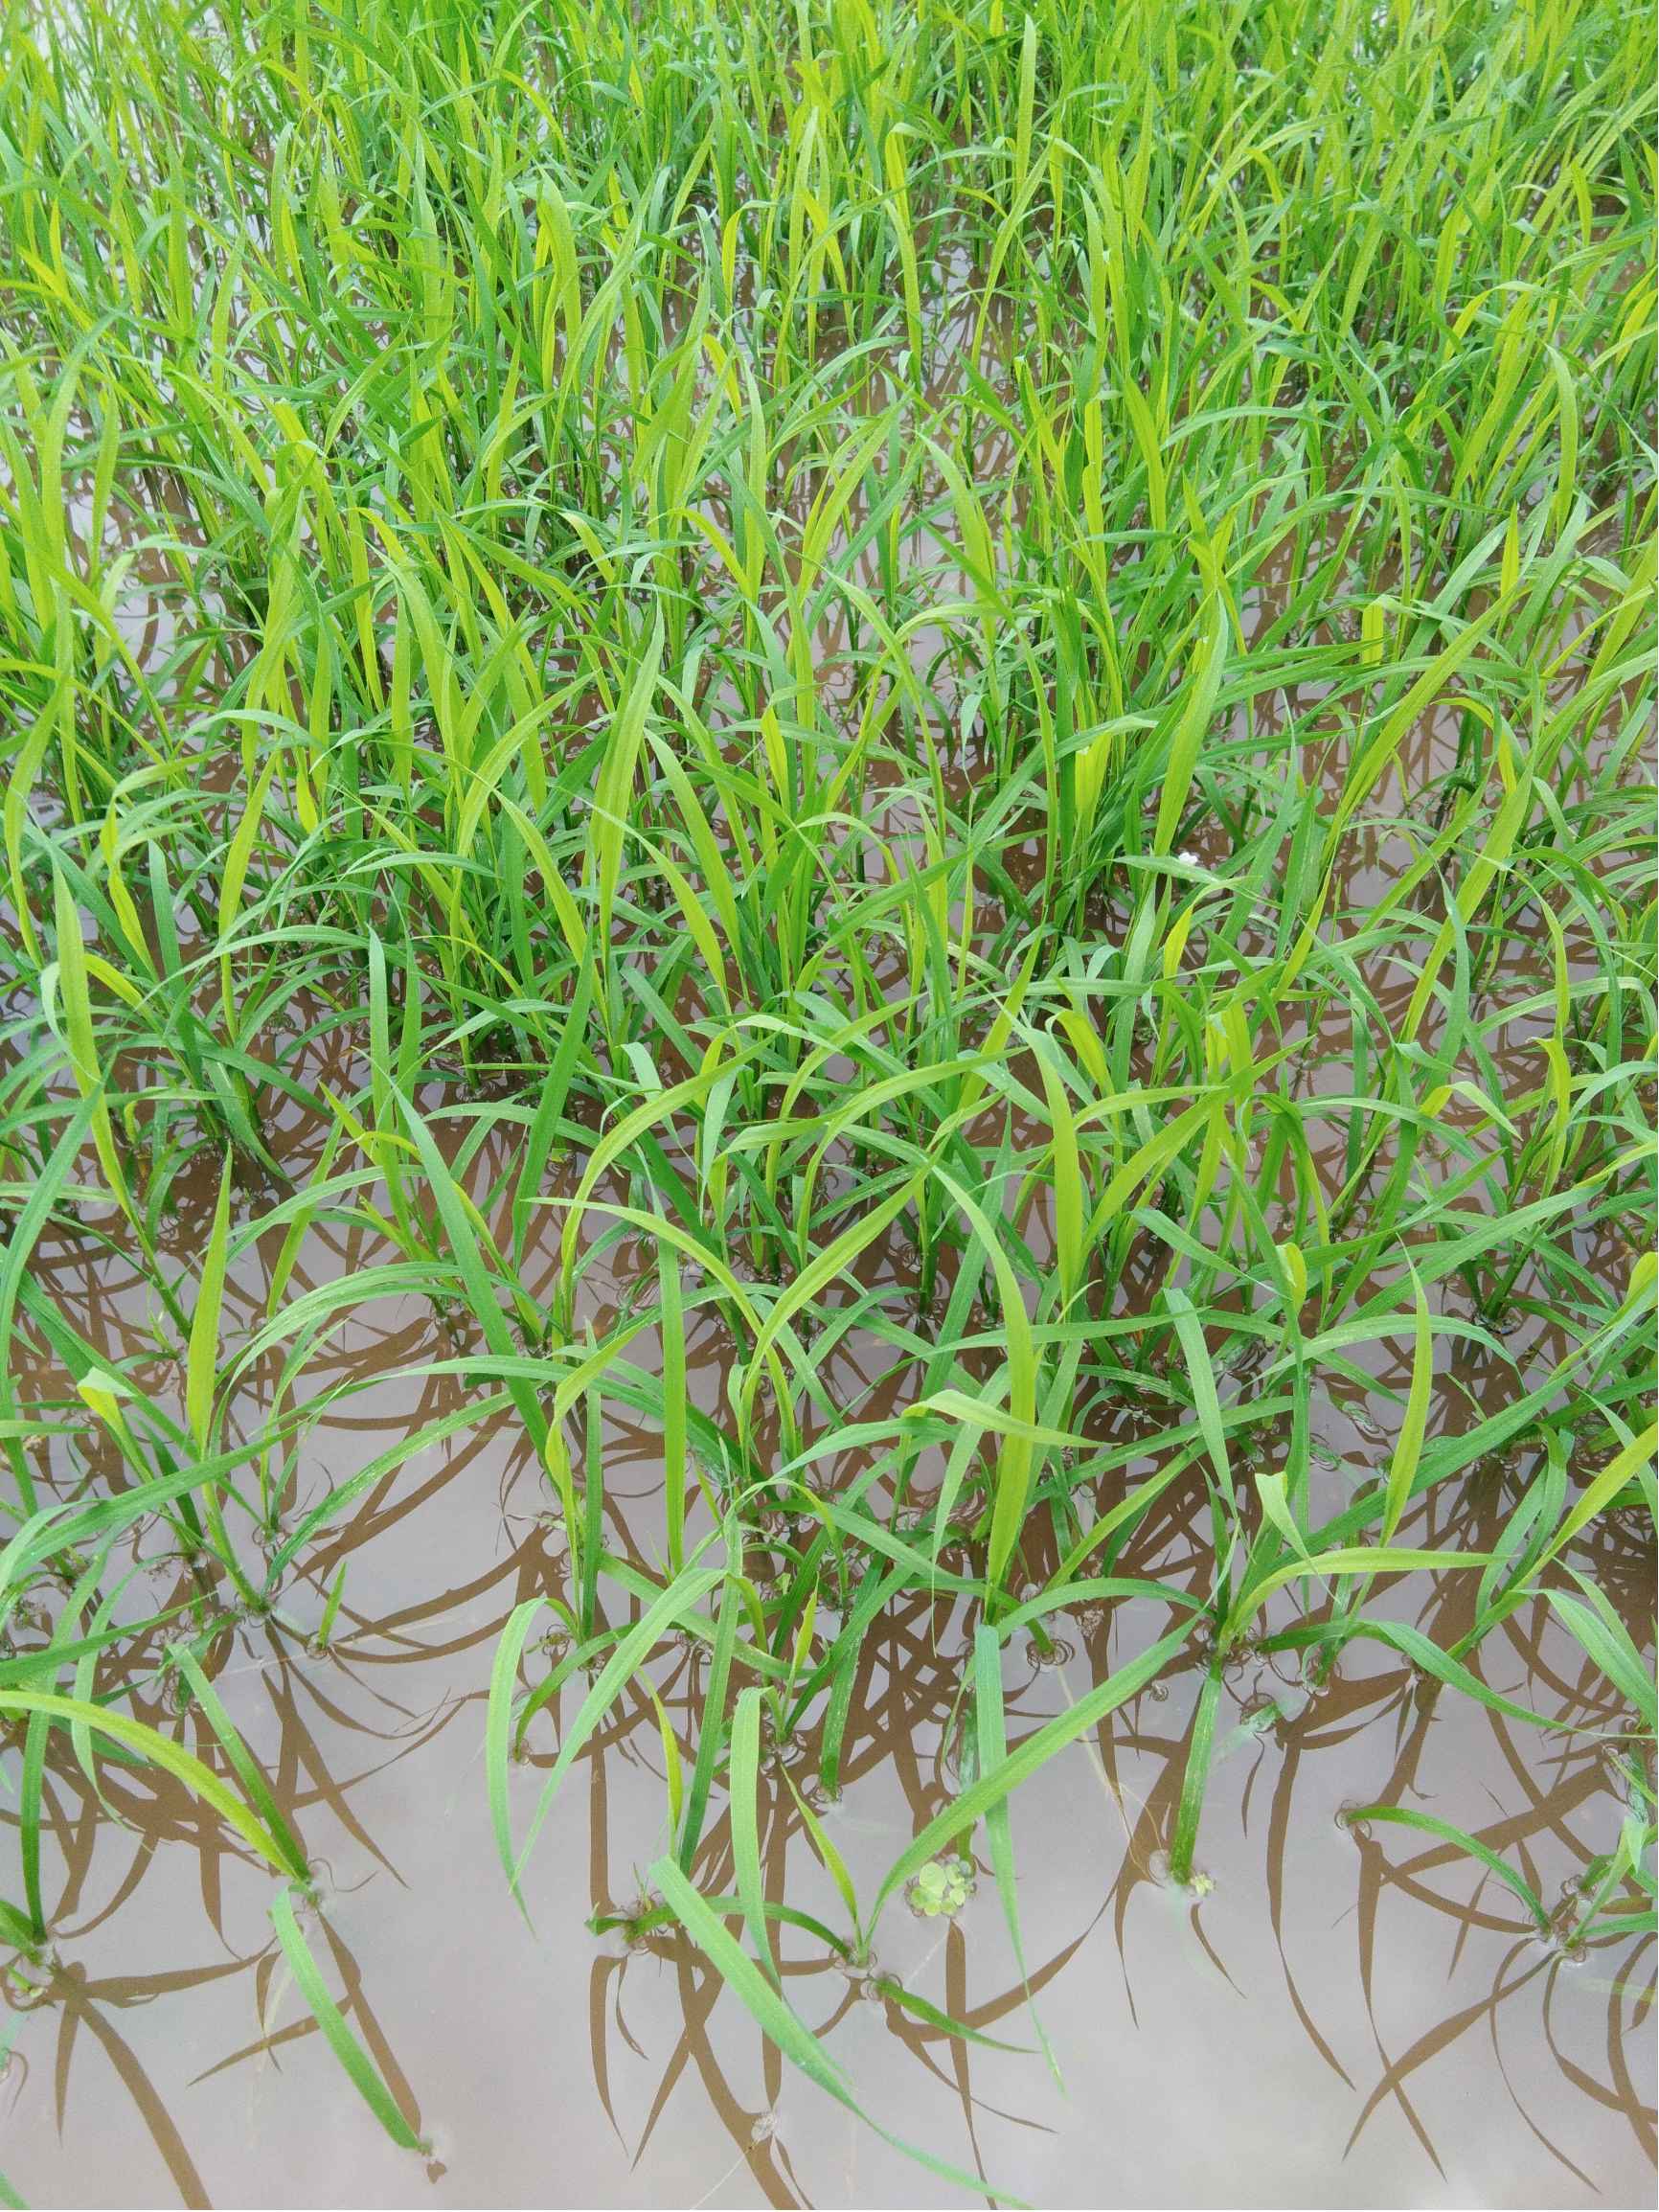 水稻秧苗图片 叶片图片